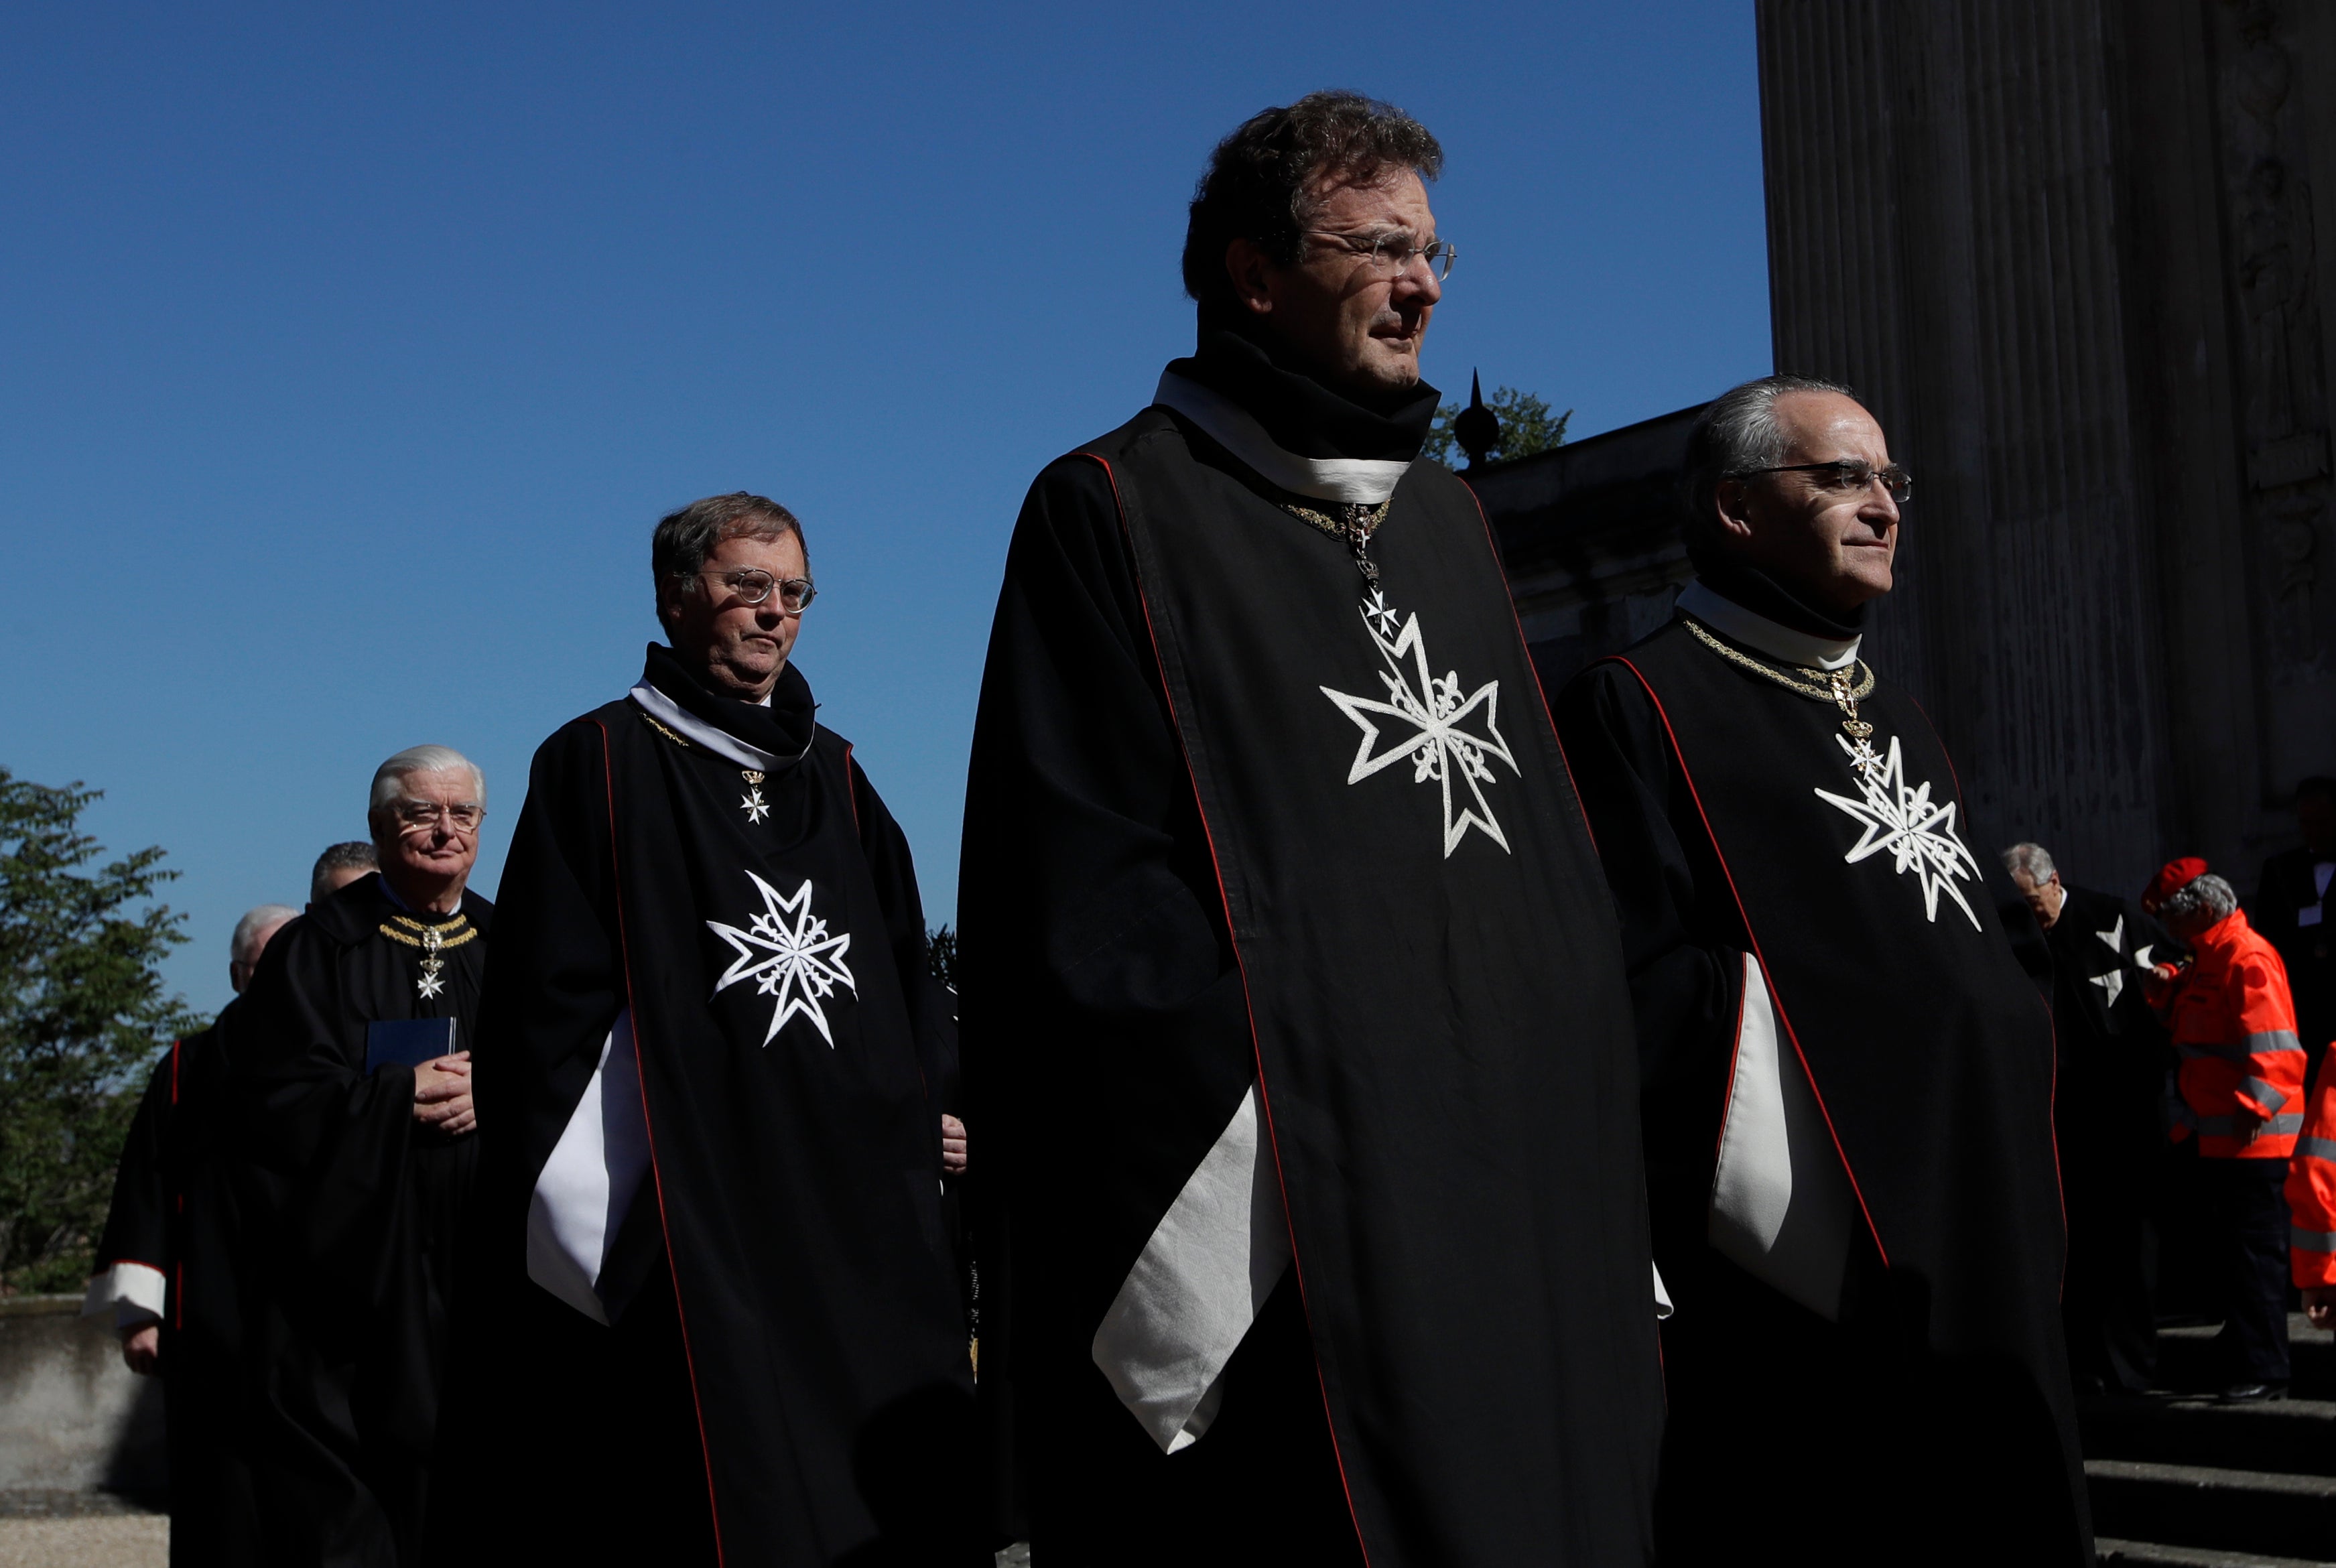 Vatican Knights of Malta